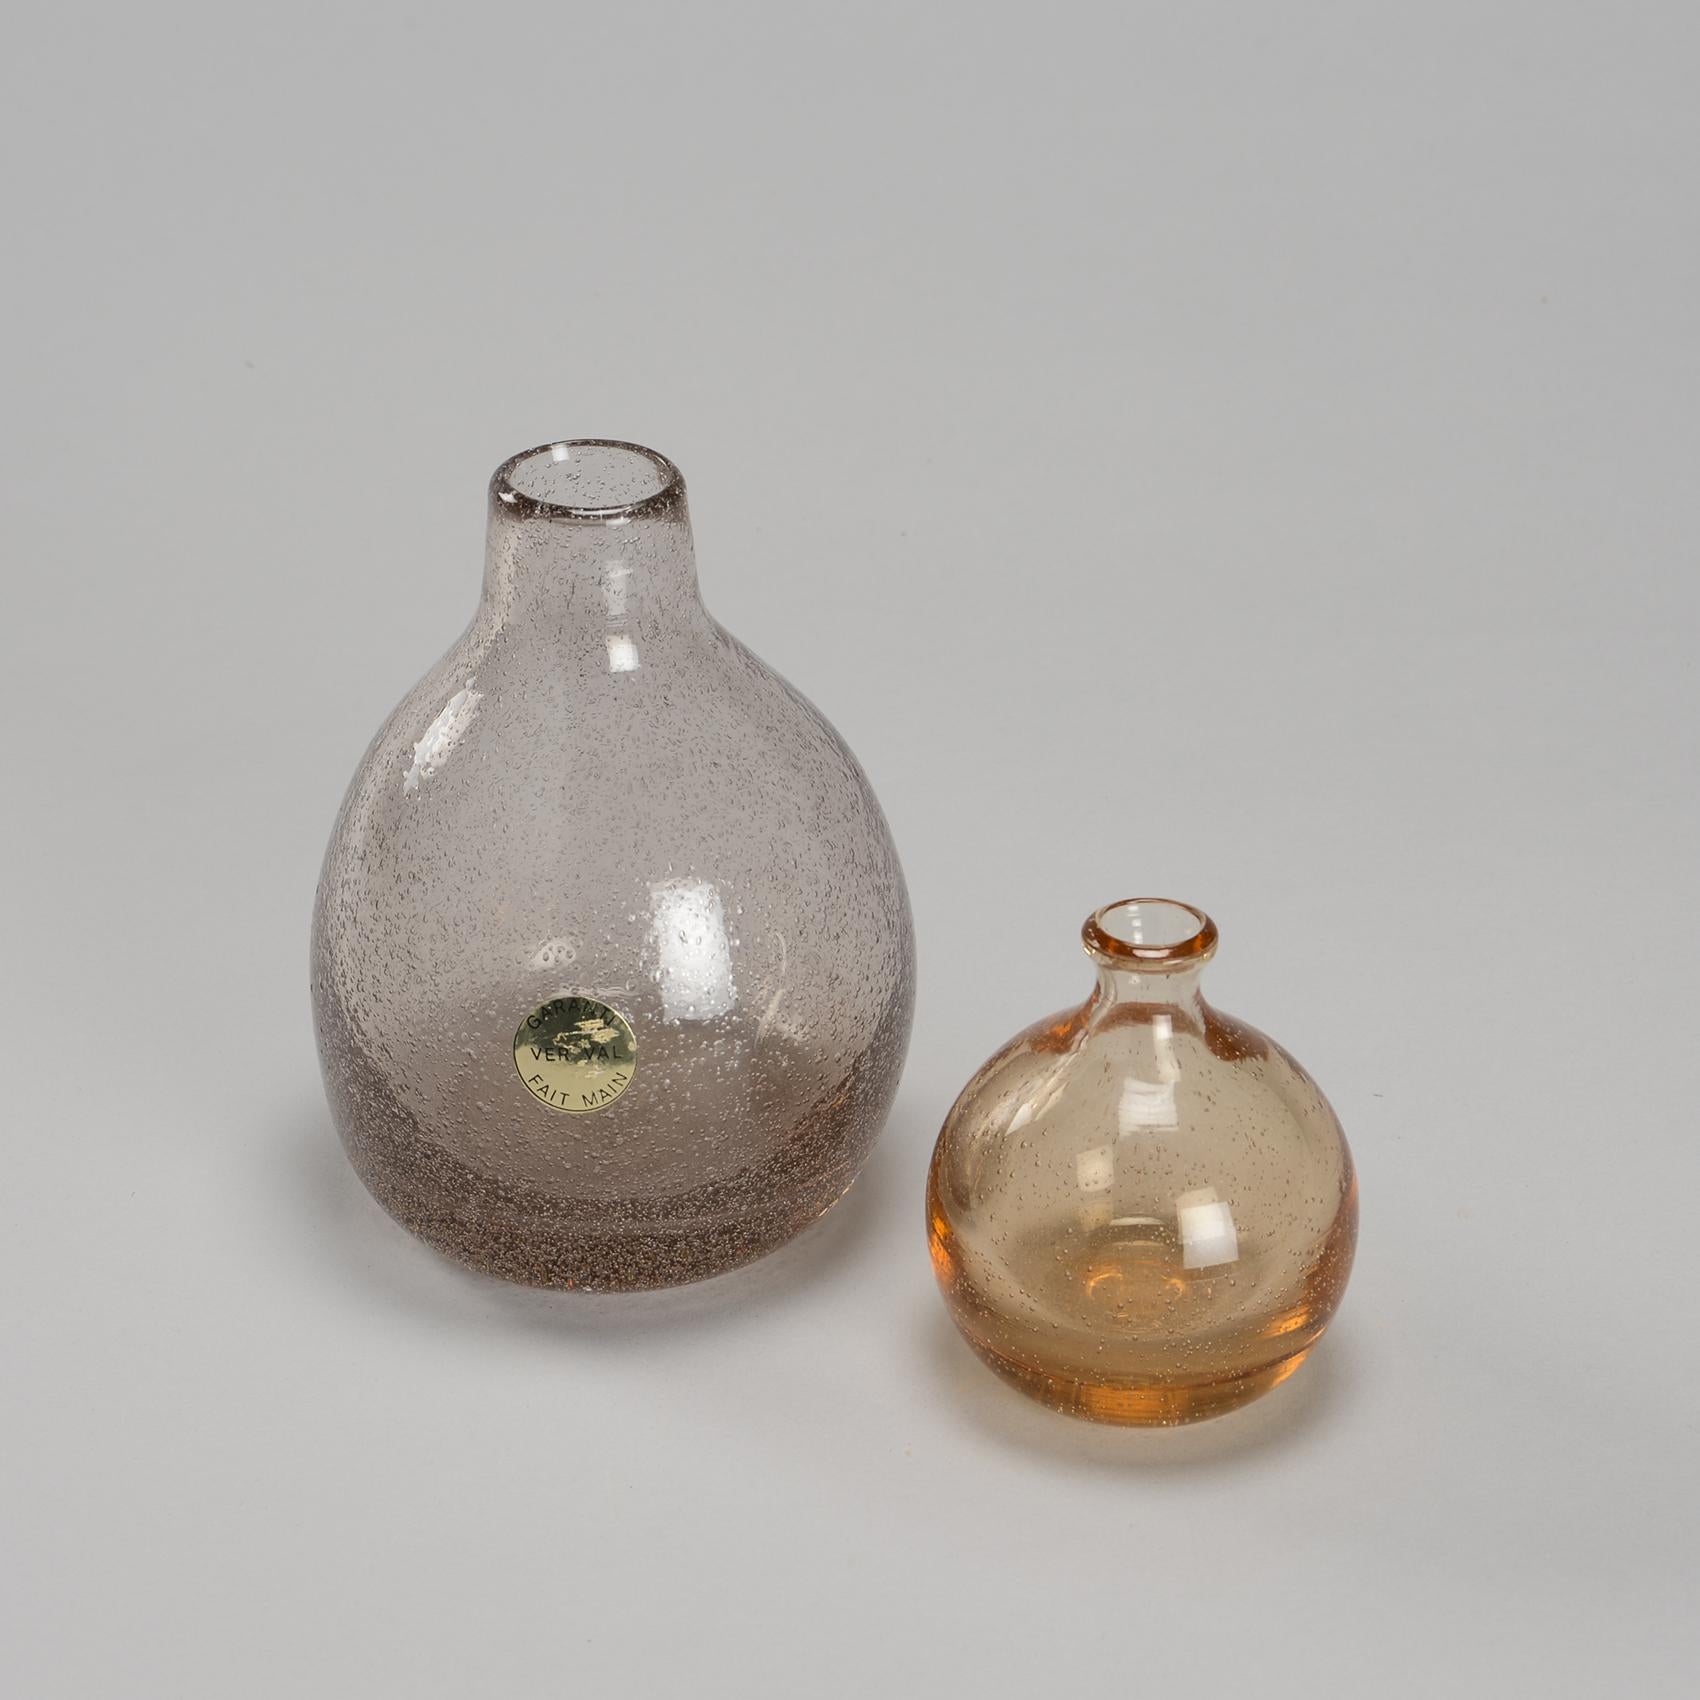 Soliflore und Vase aus mundgeblasenem Glas, signiert Verval Vallauris, von Alexandre Kostanda, französischer Keramiker, als er mit der Glasherstellung begann. Diese Stücke sind recht selten.

Kleine Vase : 4.3 